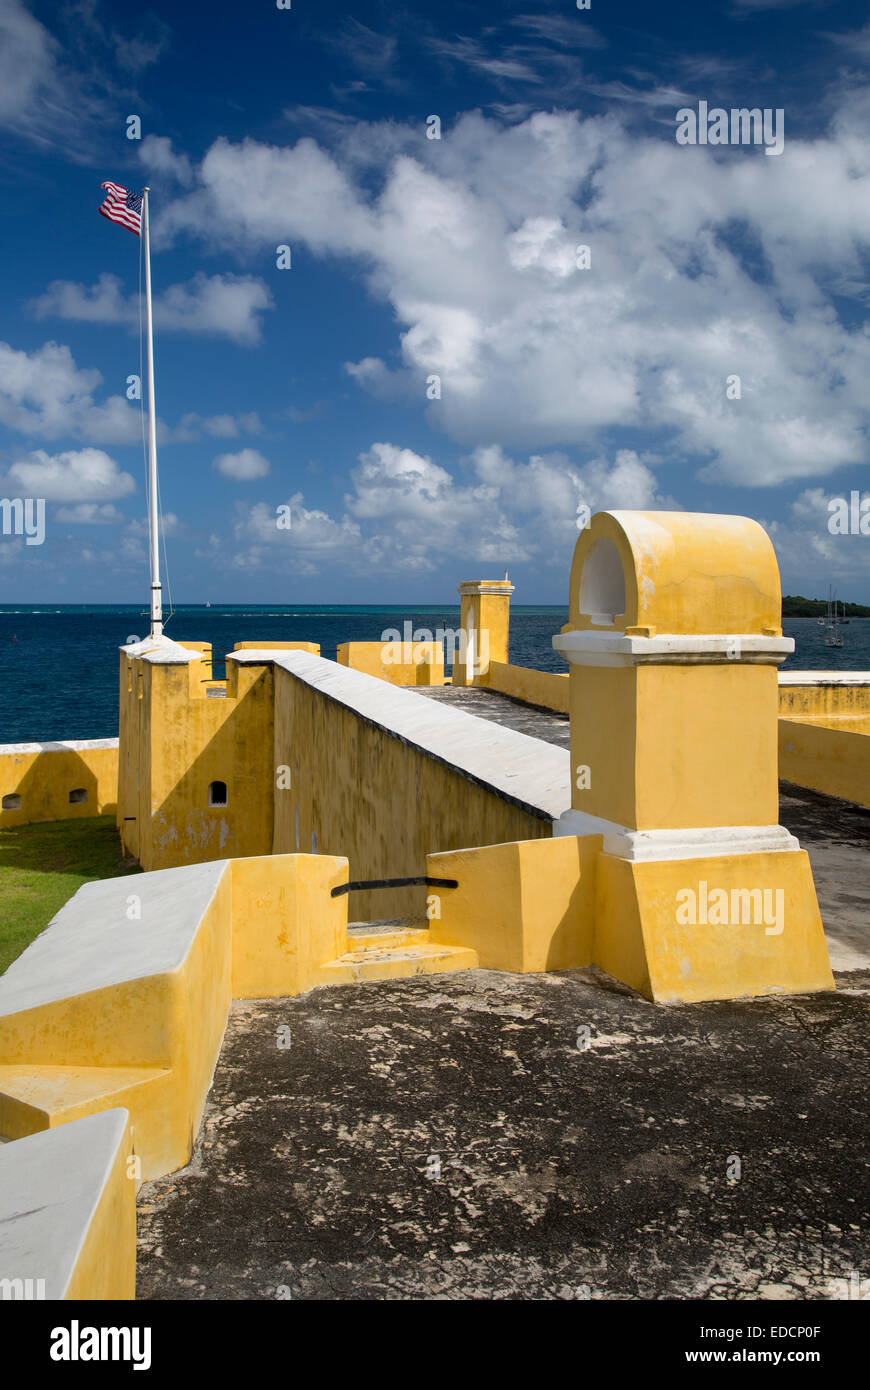 Drapeau américain survole Fort Christiansvaern, Christiansted, St Croix, îles Vierges américaines, les îles des Caraïbes Banque D'Images